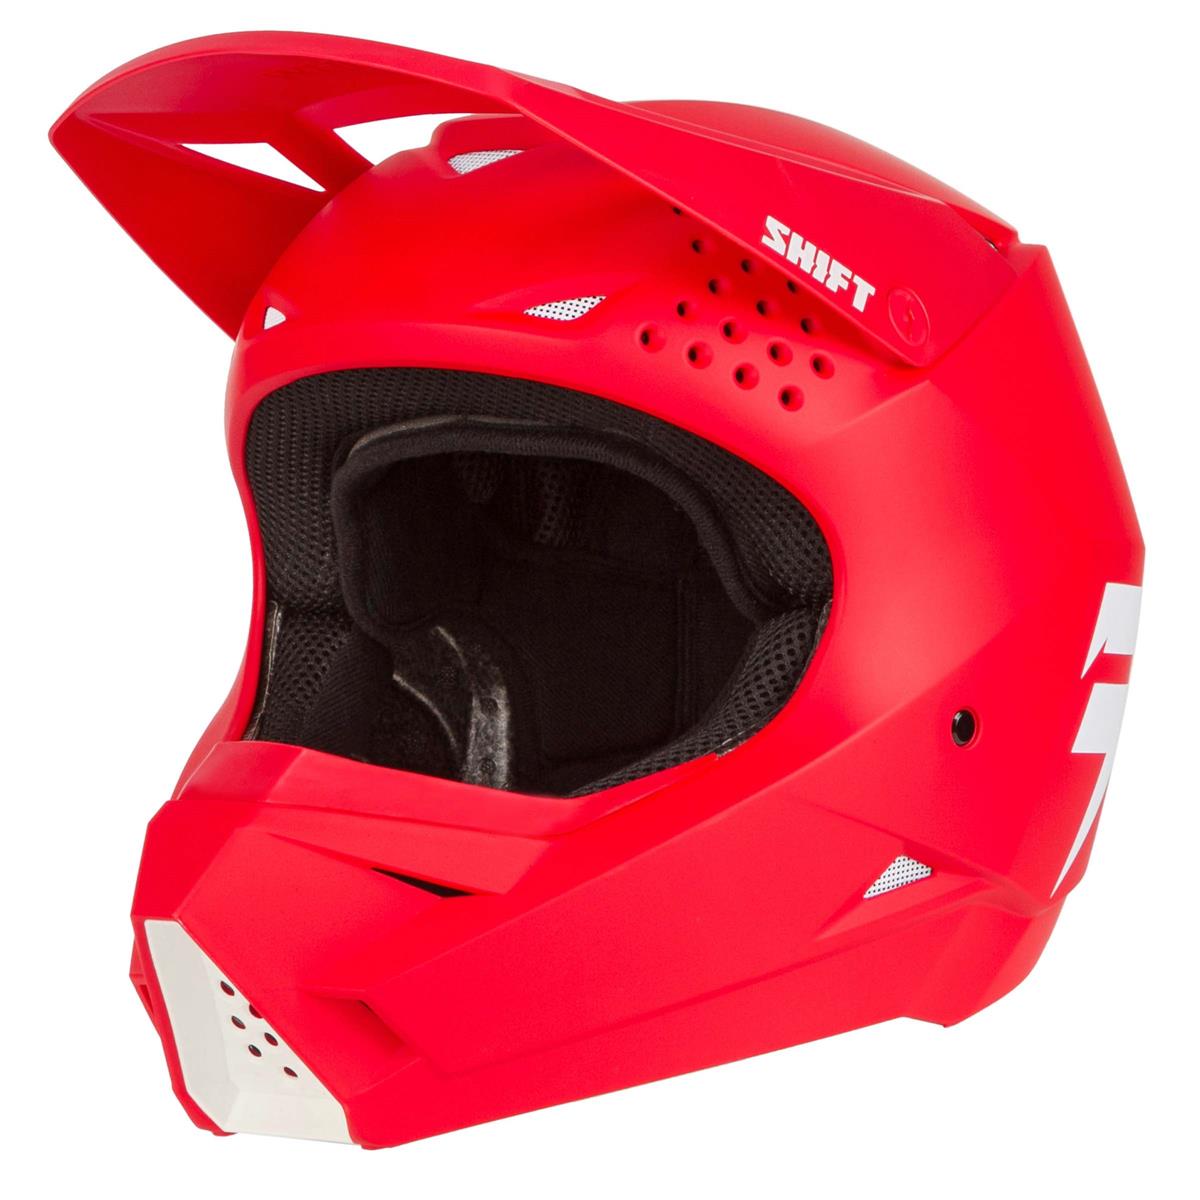 Shift MX Helmet Whit3 Label Red